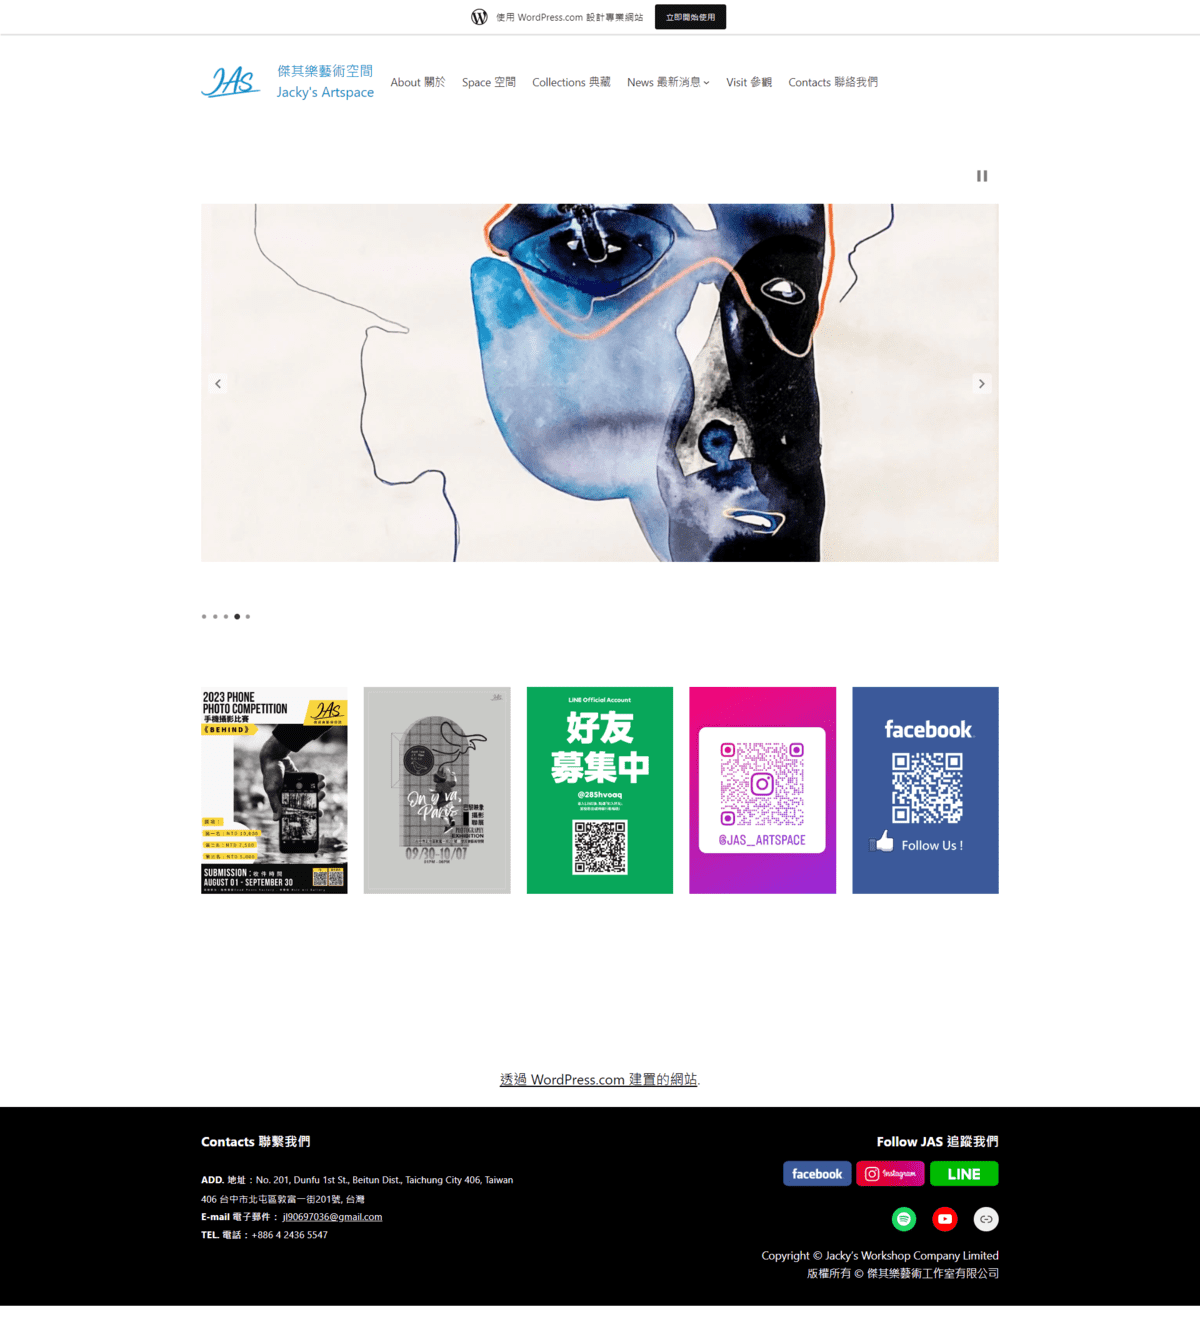 傑其樂藝術空間-首頁網站客製化設計-覺醒網頁計服務